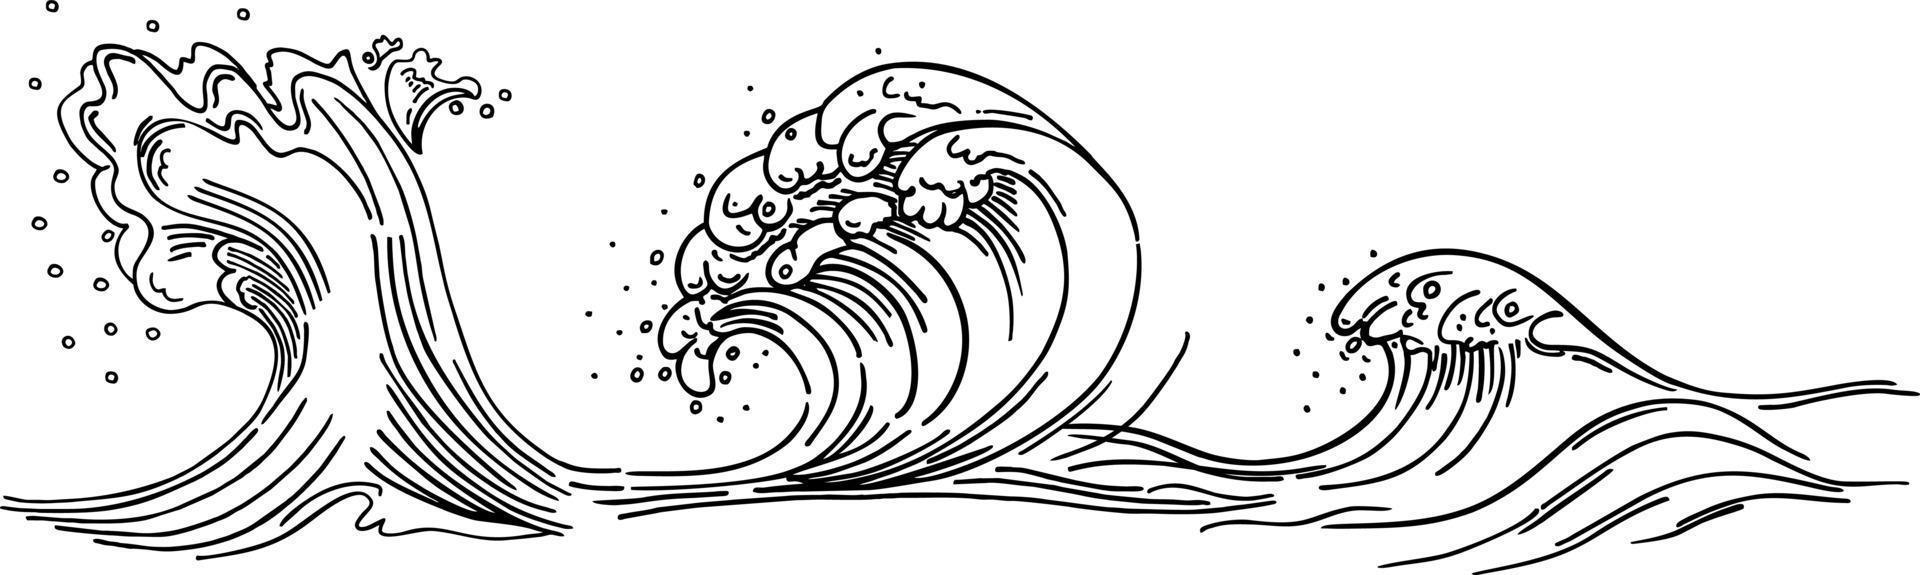 contorno da onda do mar. crista da onda do mar. esboço desenhado à mão. ilustração vetorial monocromática linear. vetor